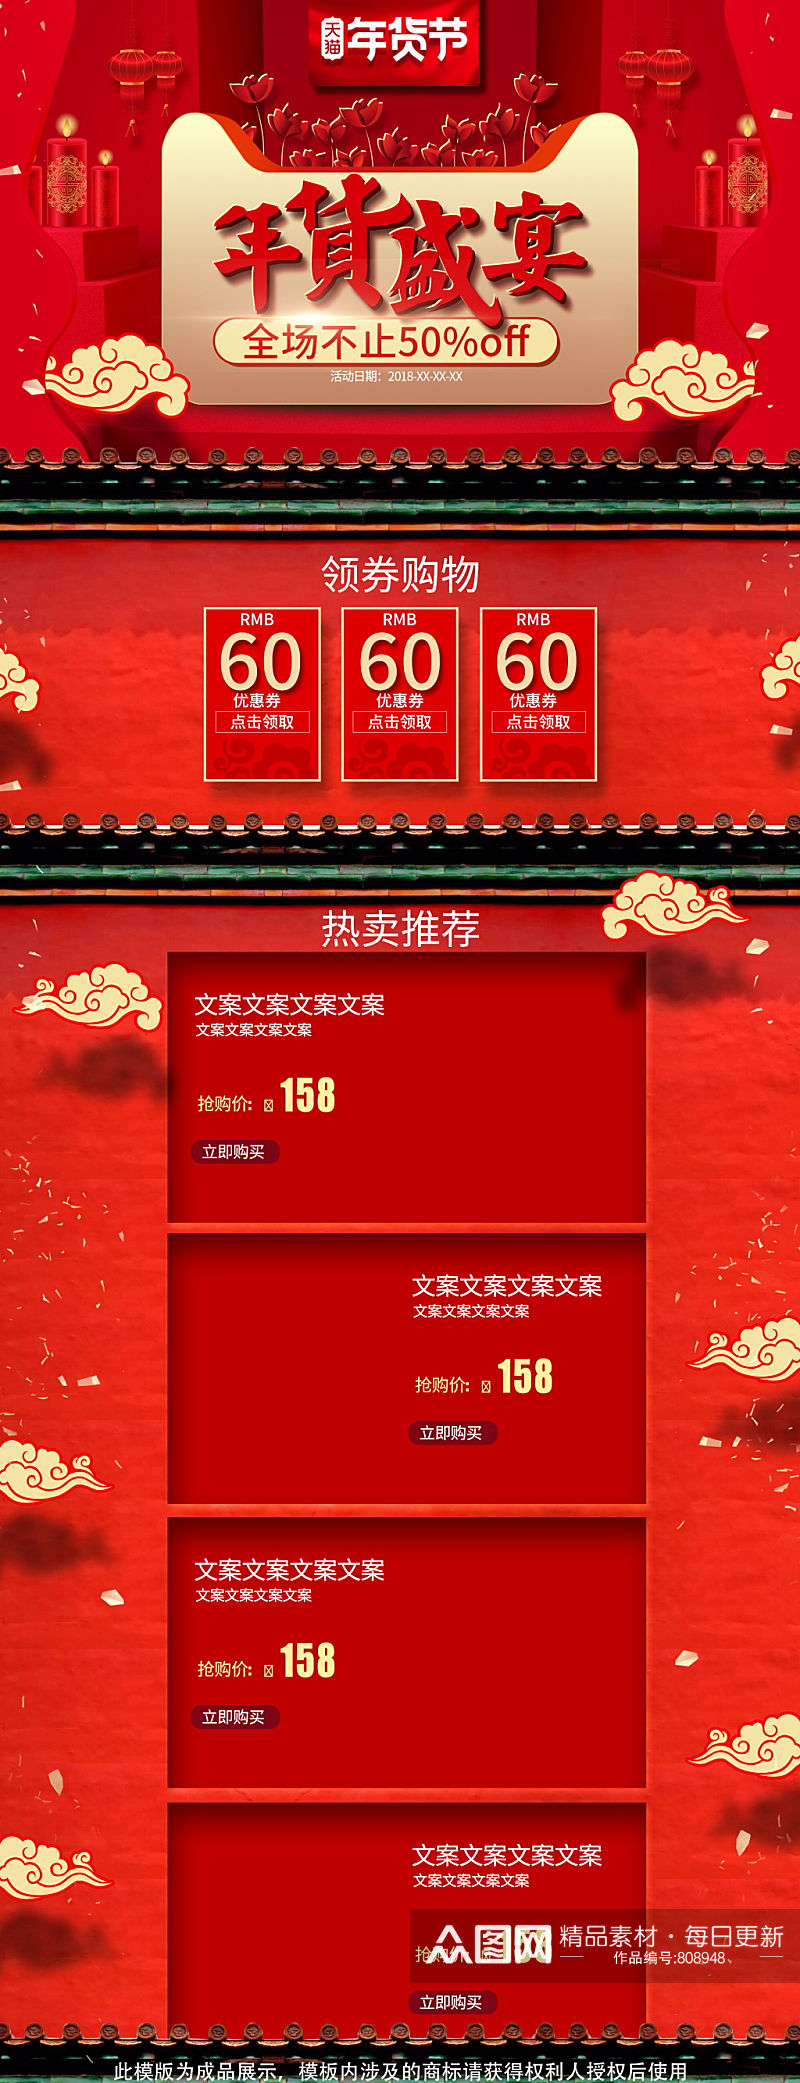 红色中国风年货节电脑端首页设计模板素材